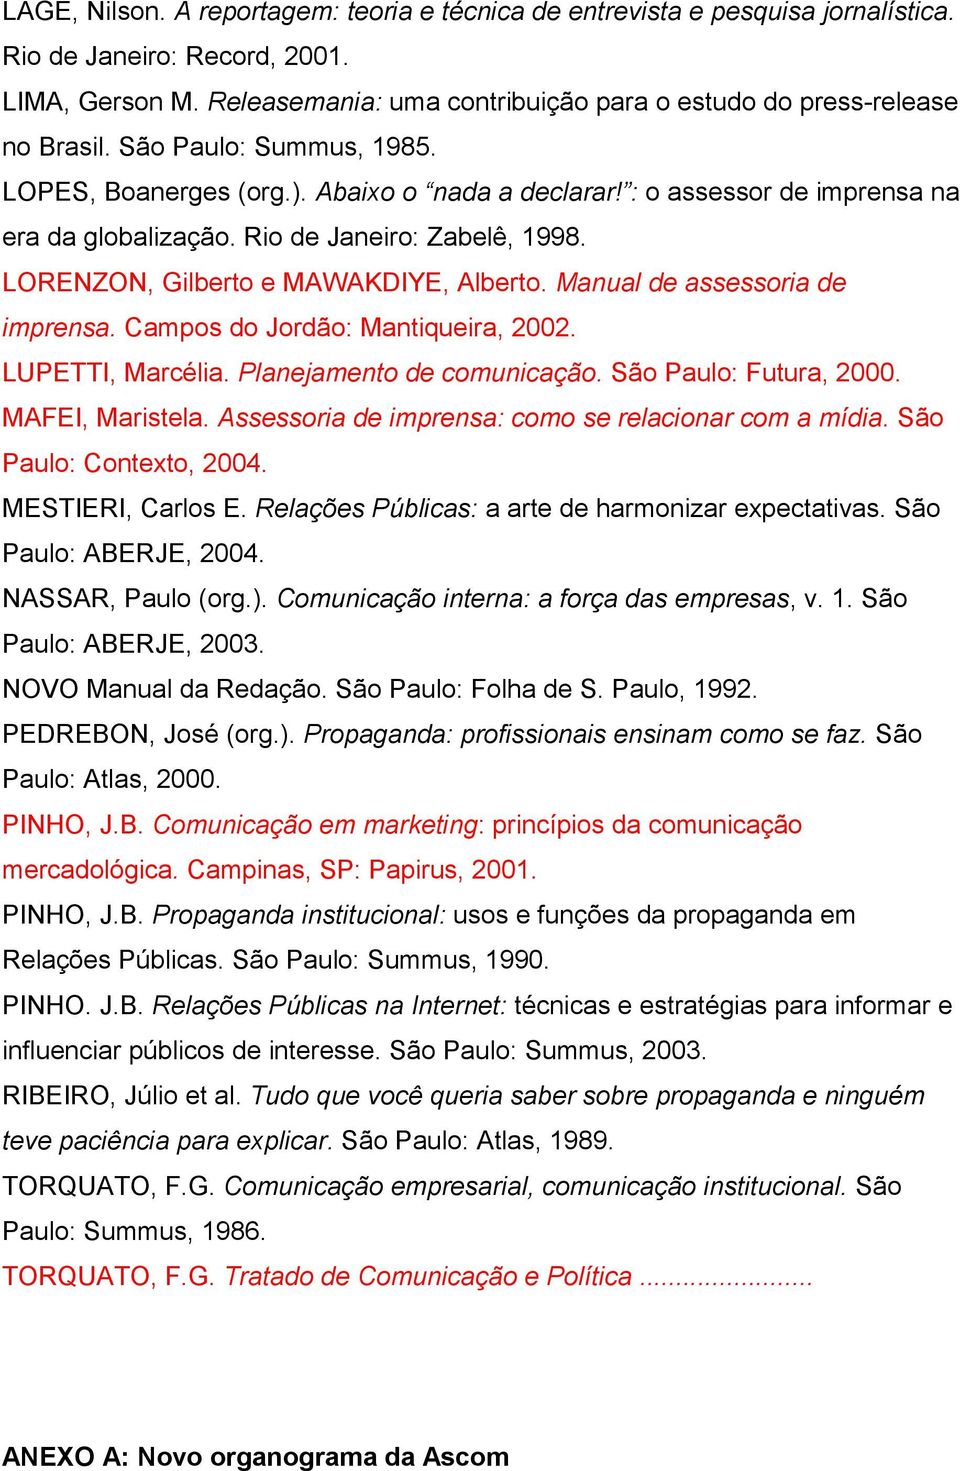 Rio de Janeiro: Zabelê, 1998. LORENZON, Gilberto e MAWAKDIYE, Alberto. Manual de assessoria de imprensa. Campos do Jordão: Mantiqueira, 2002. LUPETTI, Marcélia. Planejamento de comunicação.